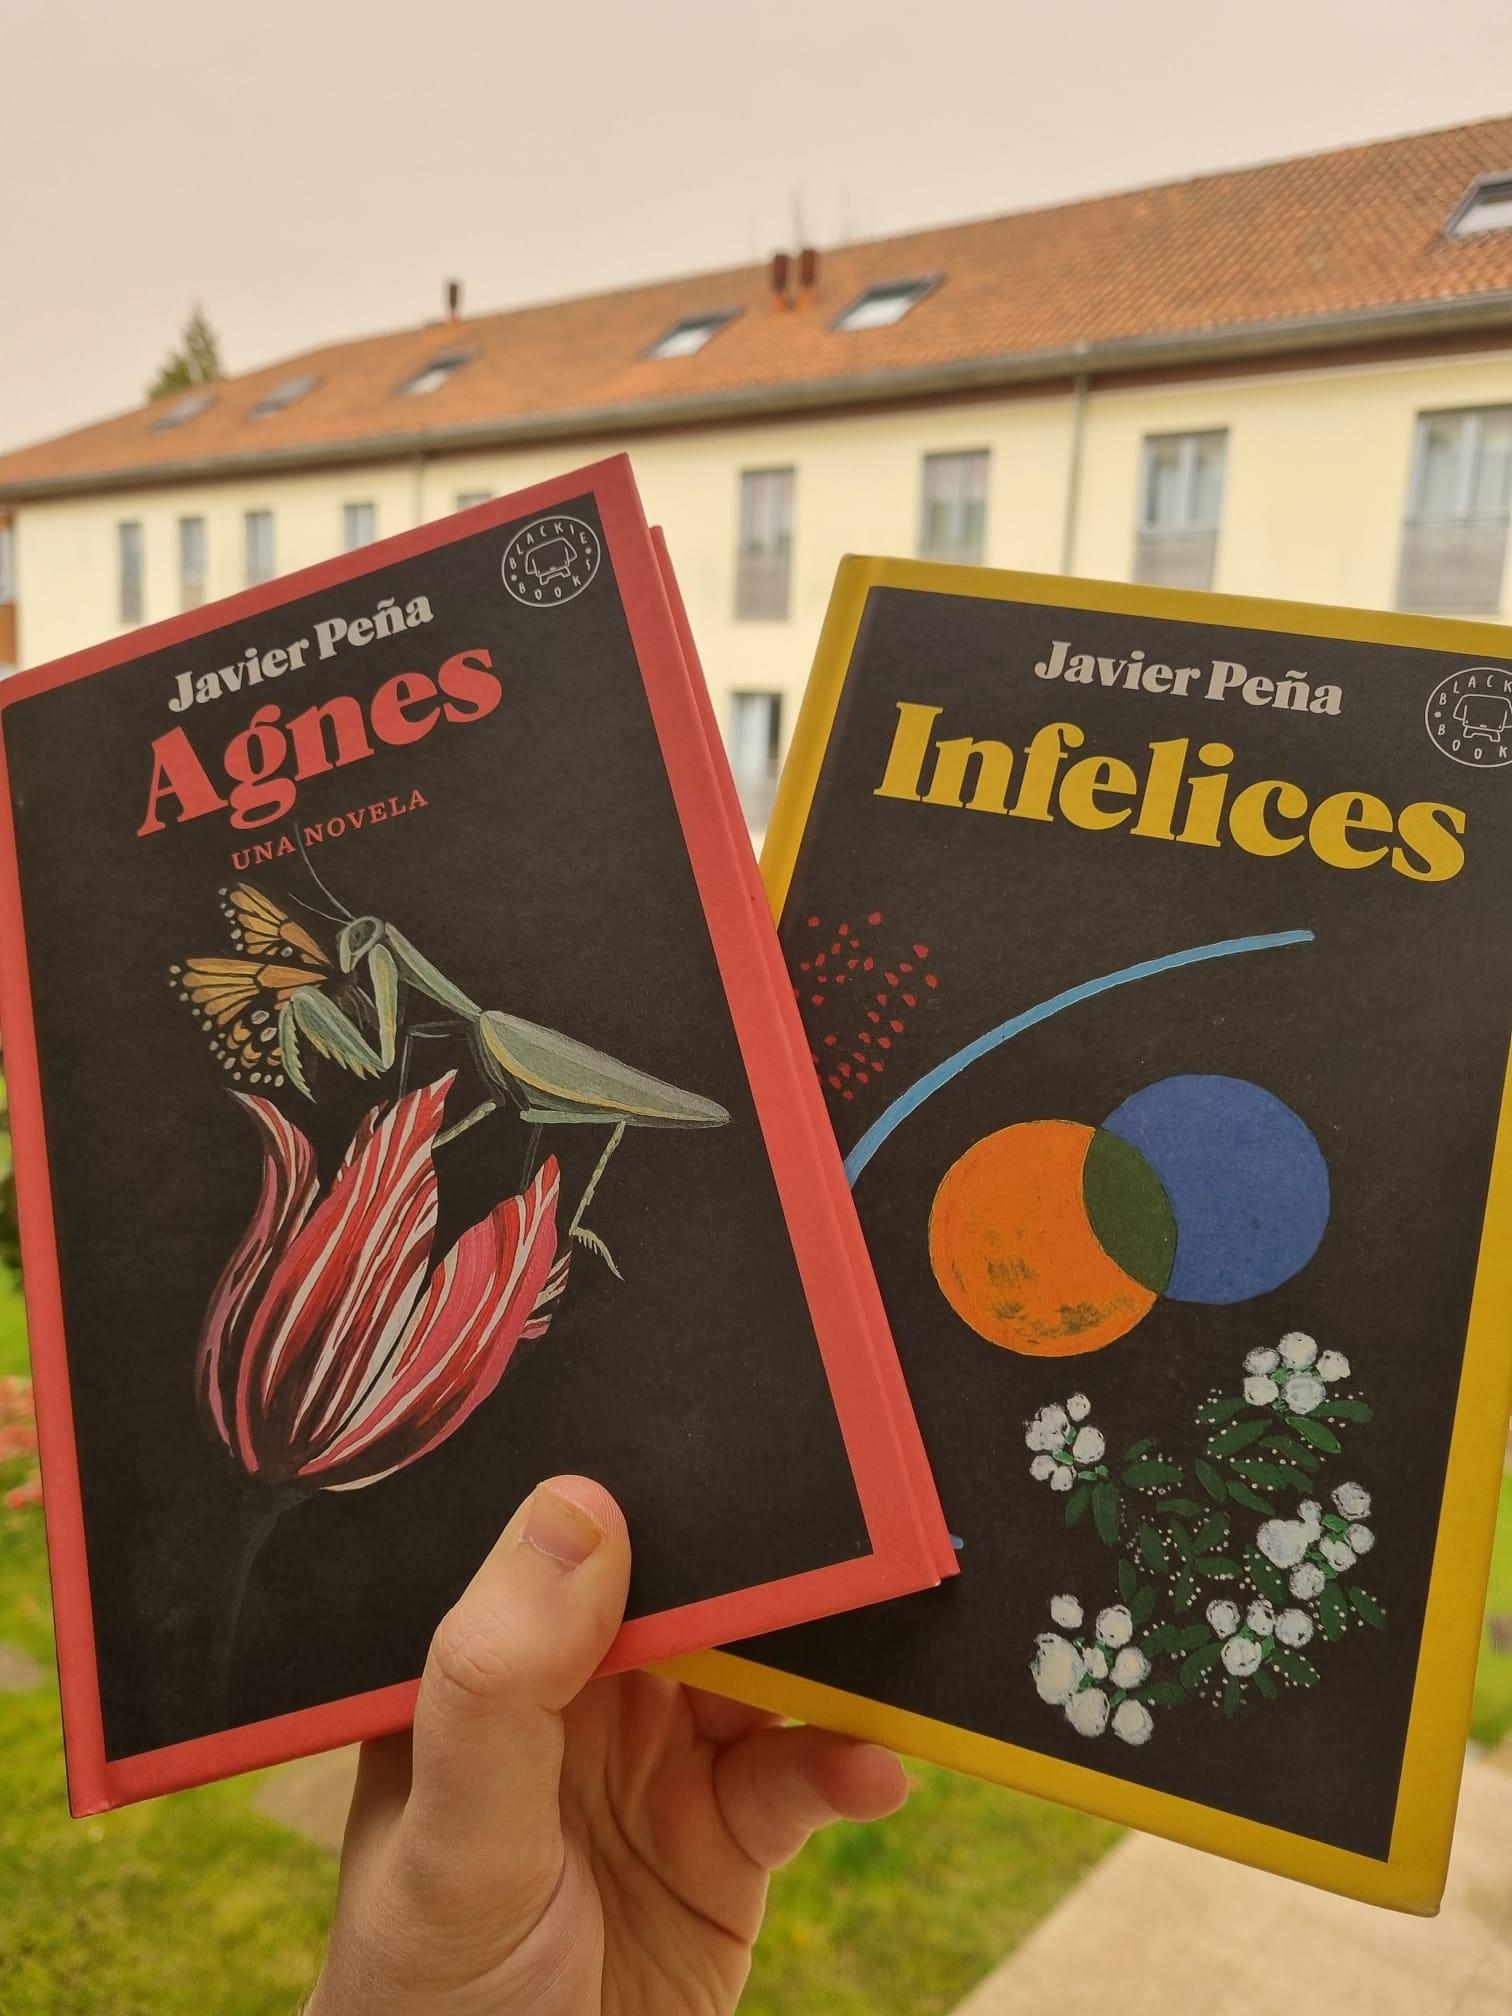 ‘Infelices’ y ‘Agnes’ son los dos libros publicados, de momento, por Javier Peña.